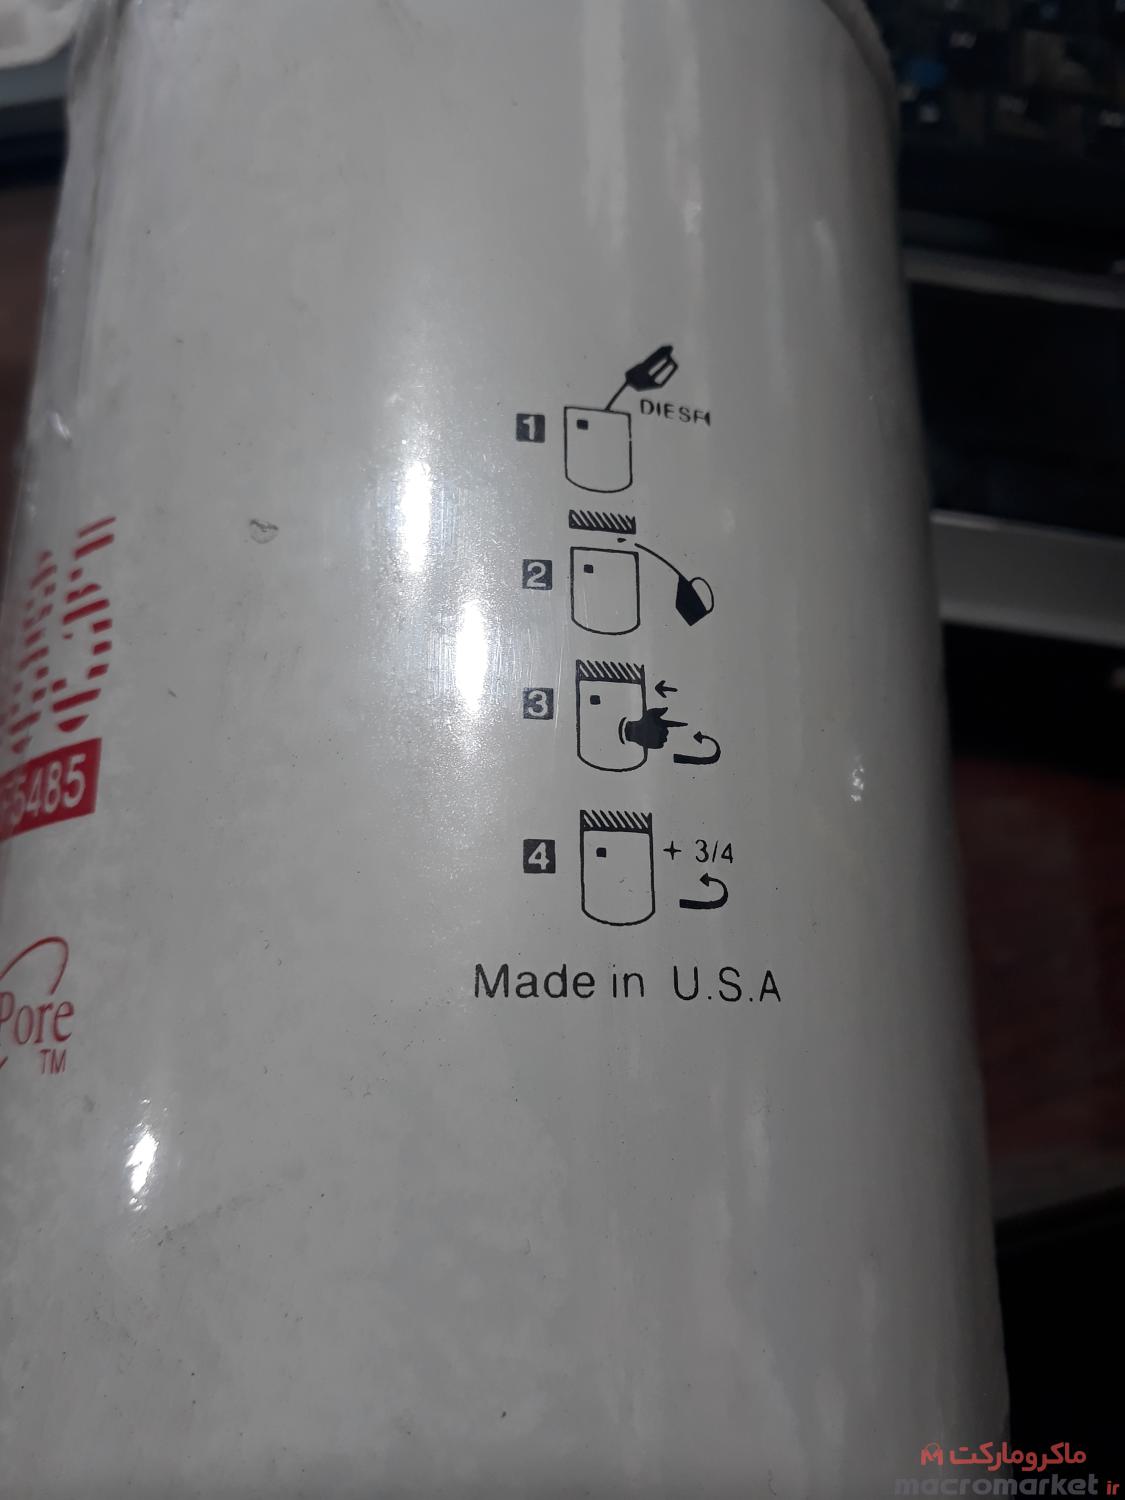 فیلتر گازوئیل اصلی اویکو یورو کارگو آمیکو کمپرسی - فلیتگارد اصلی FF5485 آمریکایی فشارقوی - قابل ارسال سراسر ایران